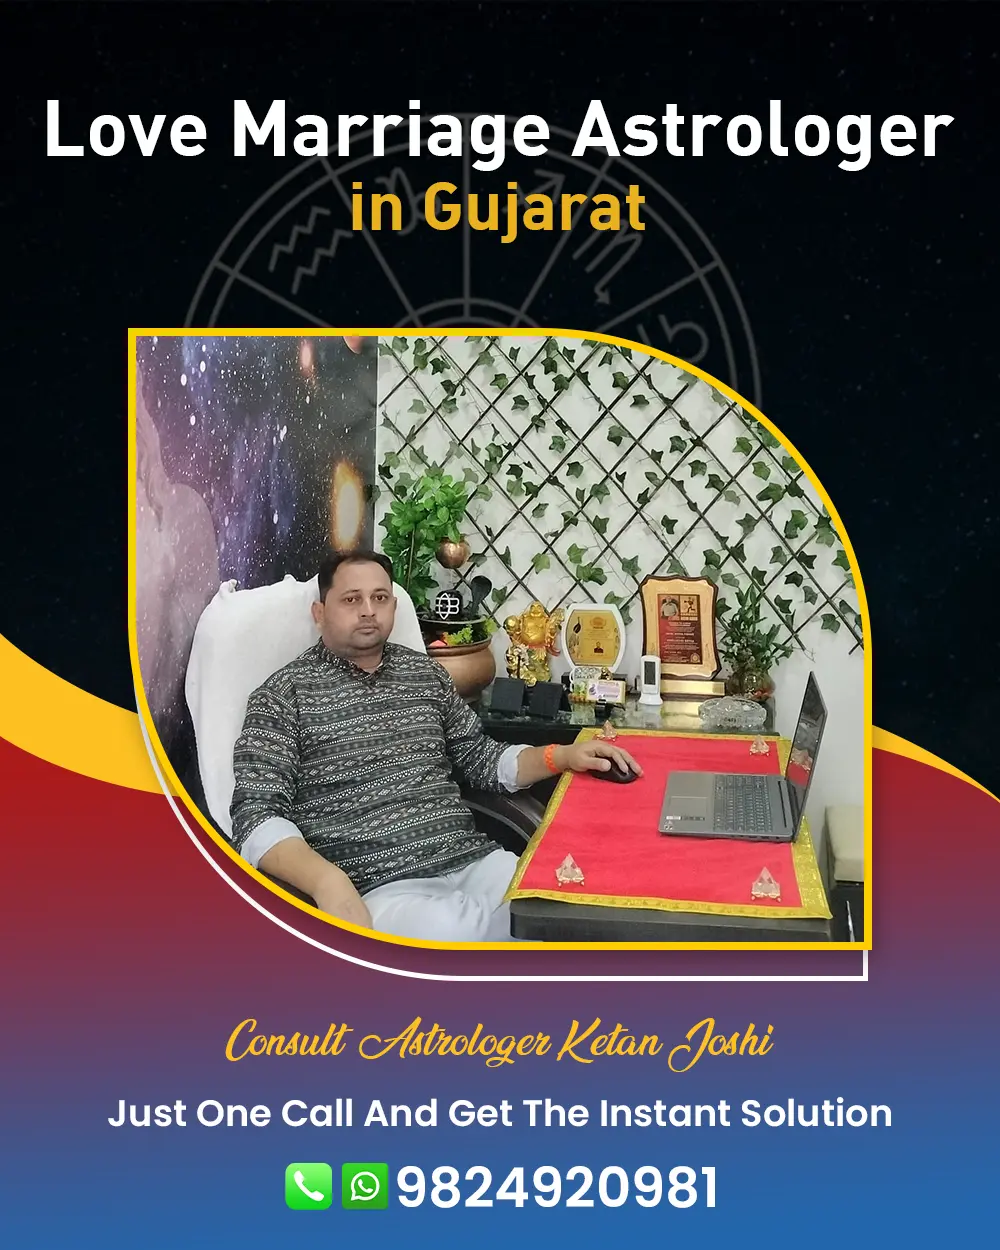 Love Marriage Astrologer in Gujarat